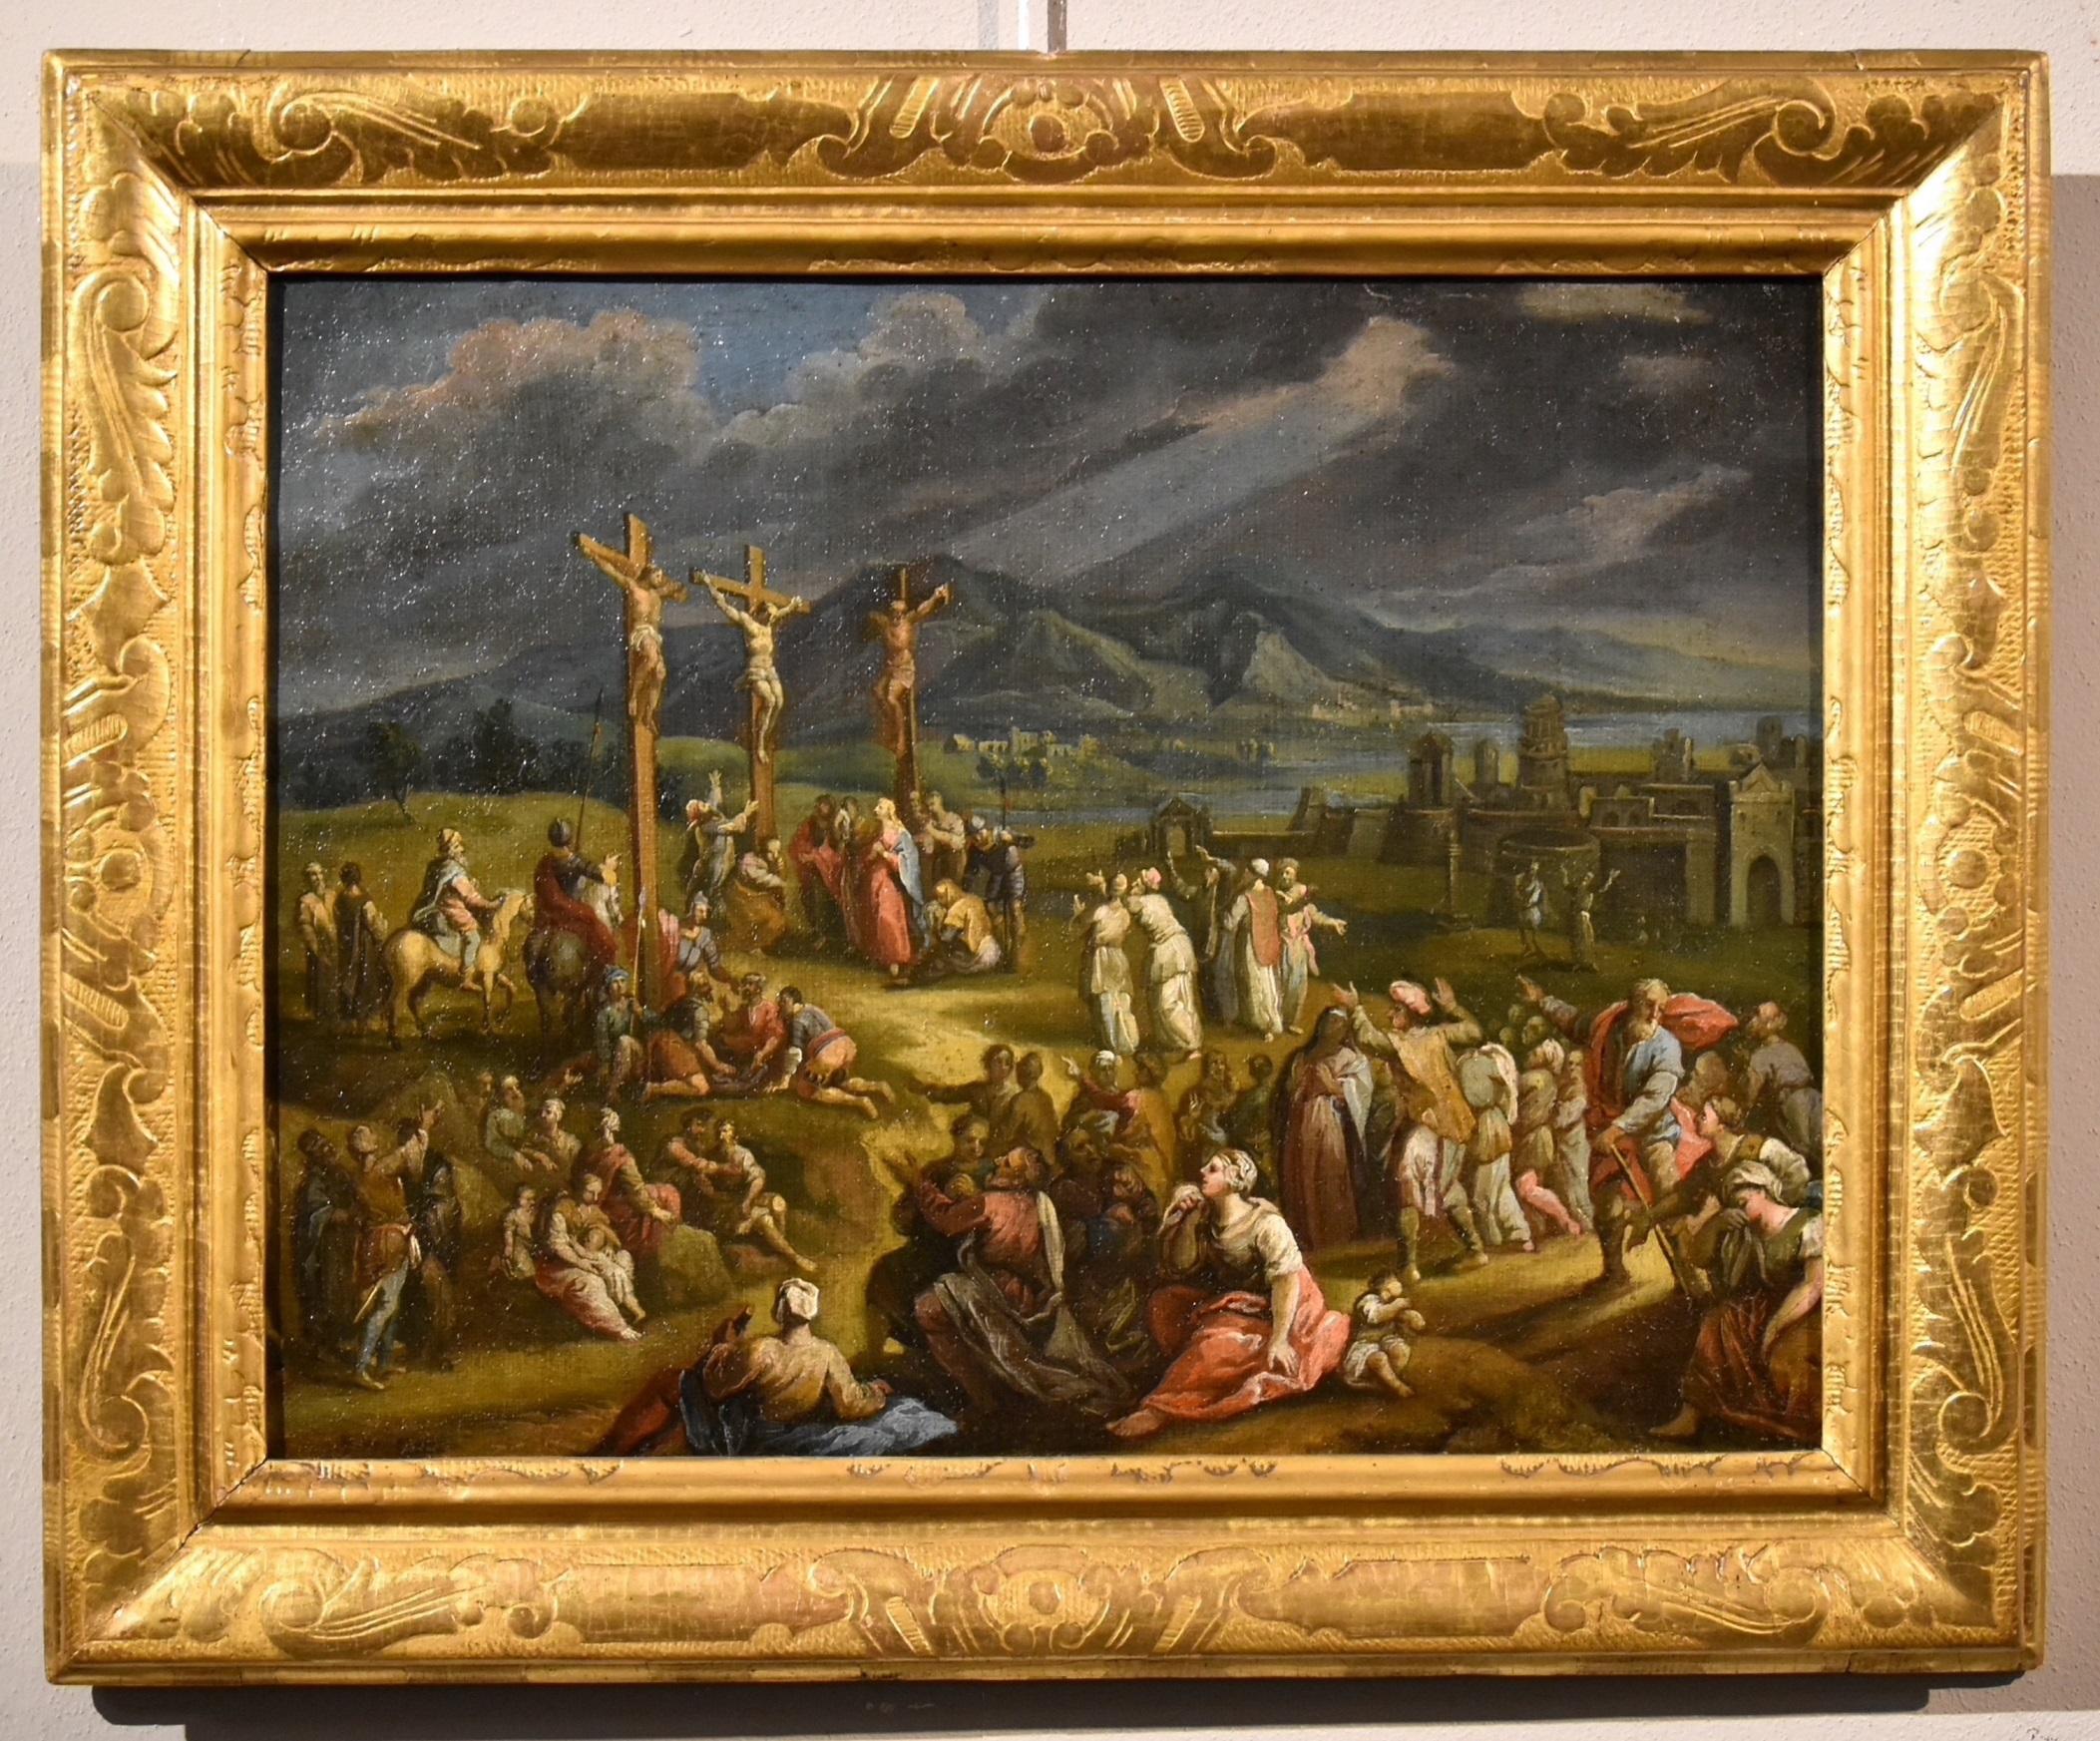 Landschaft, Kreuzigung Christi, Öl auf Leinwand, alter Meister, 17. Jahrhundert  – Painting von Scipione Compagni, or Compagno (Naples, about 1624 - after 1680)